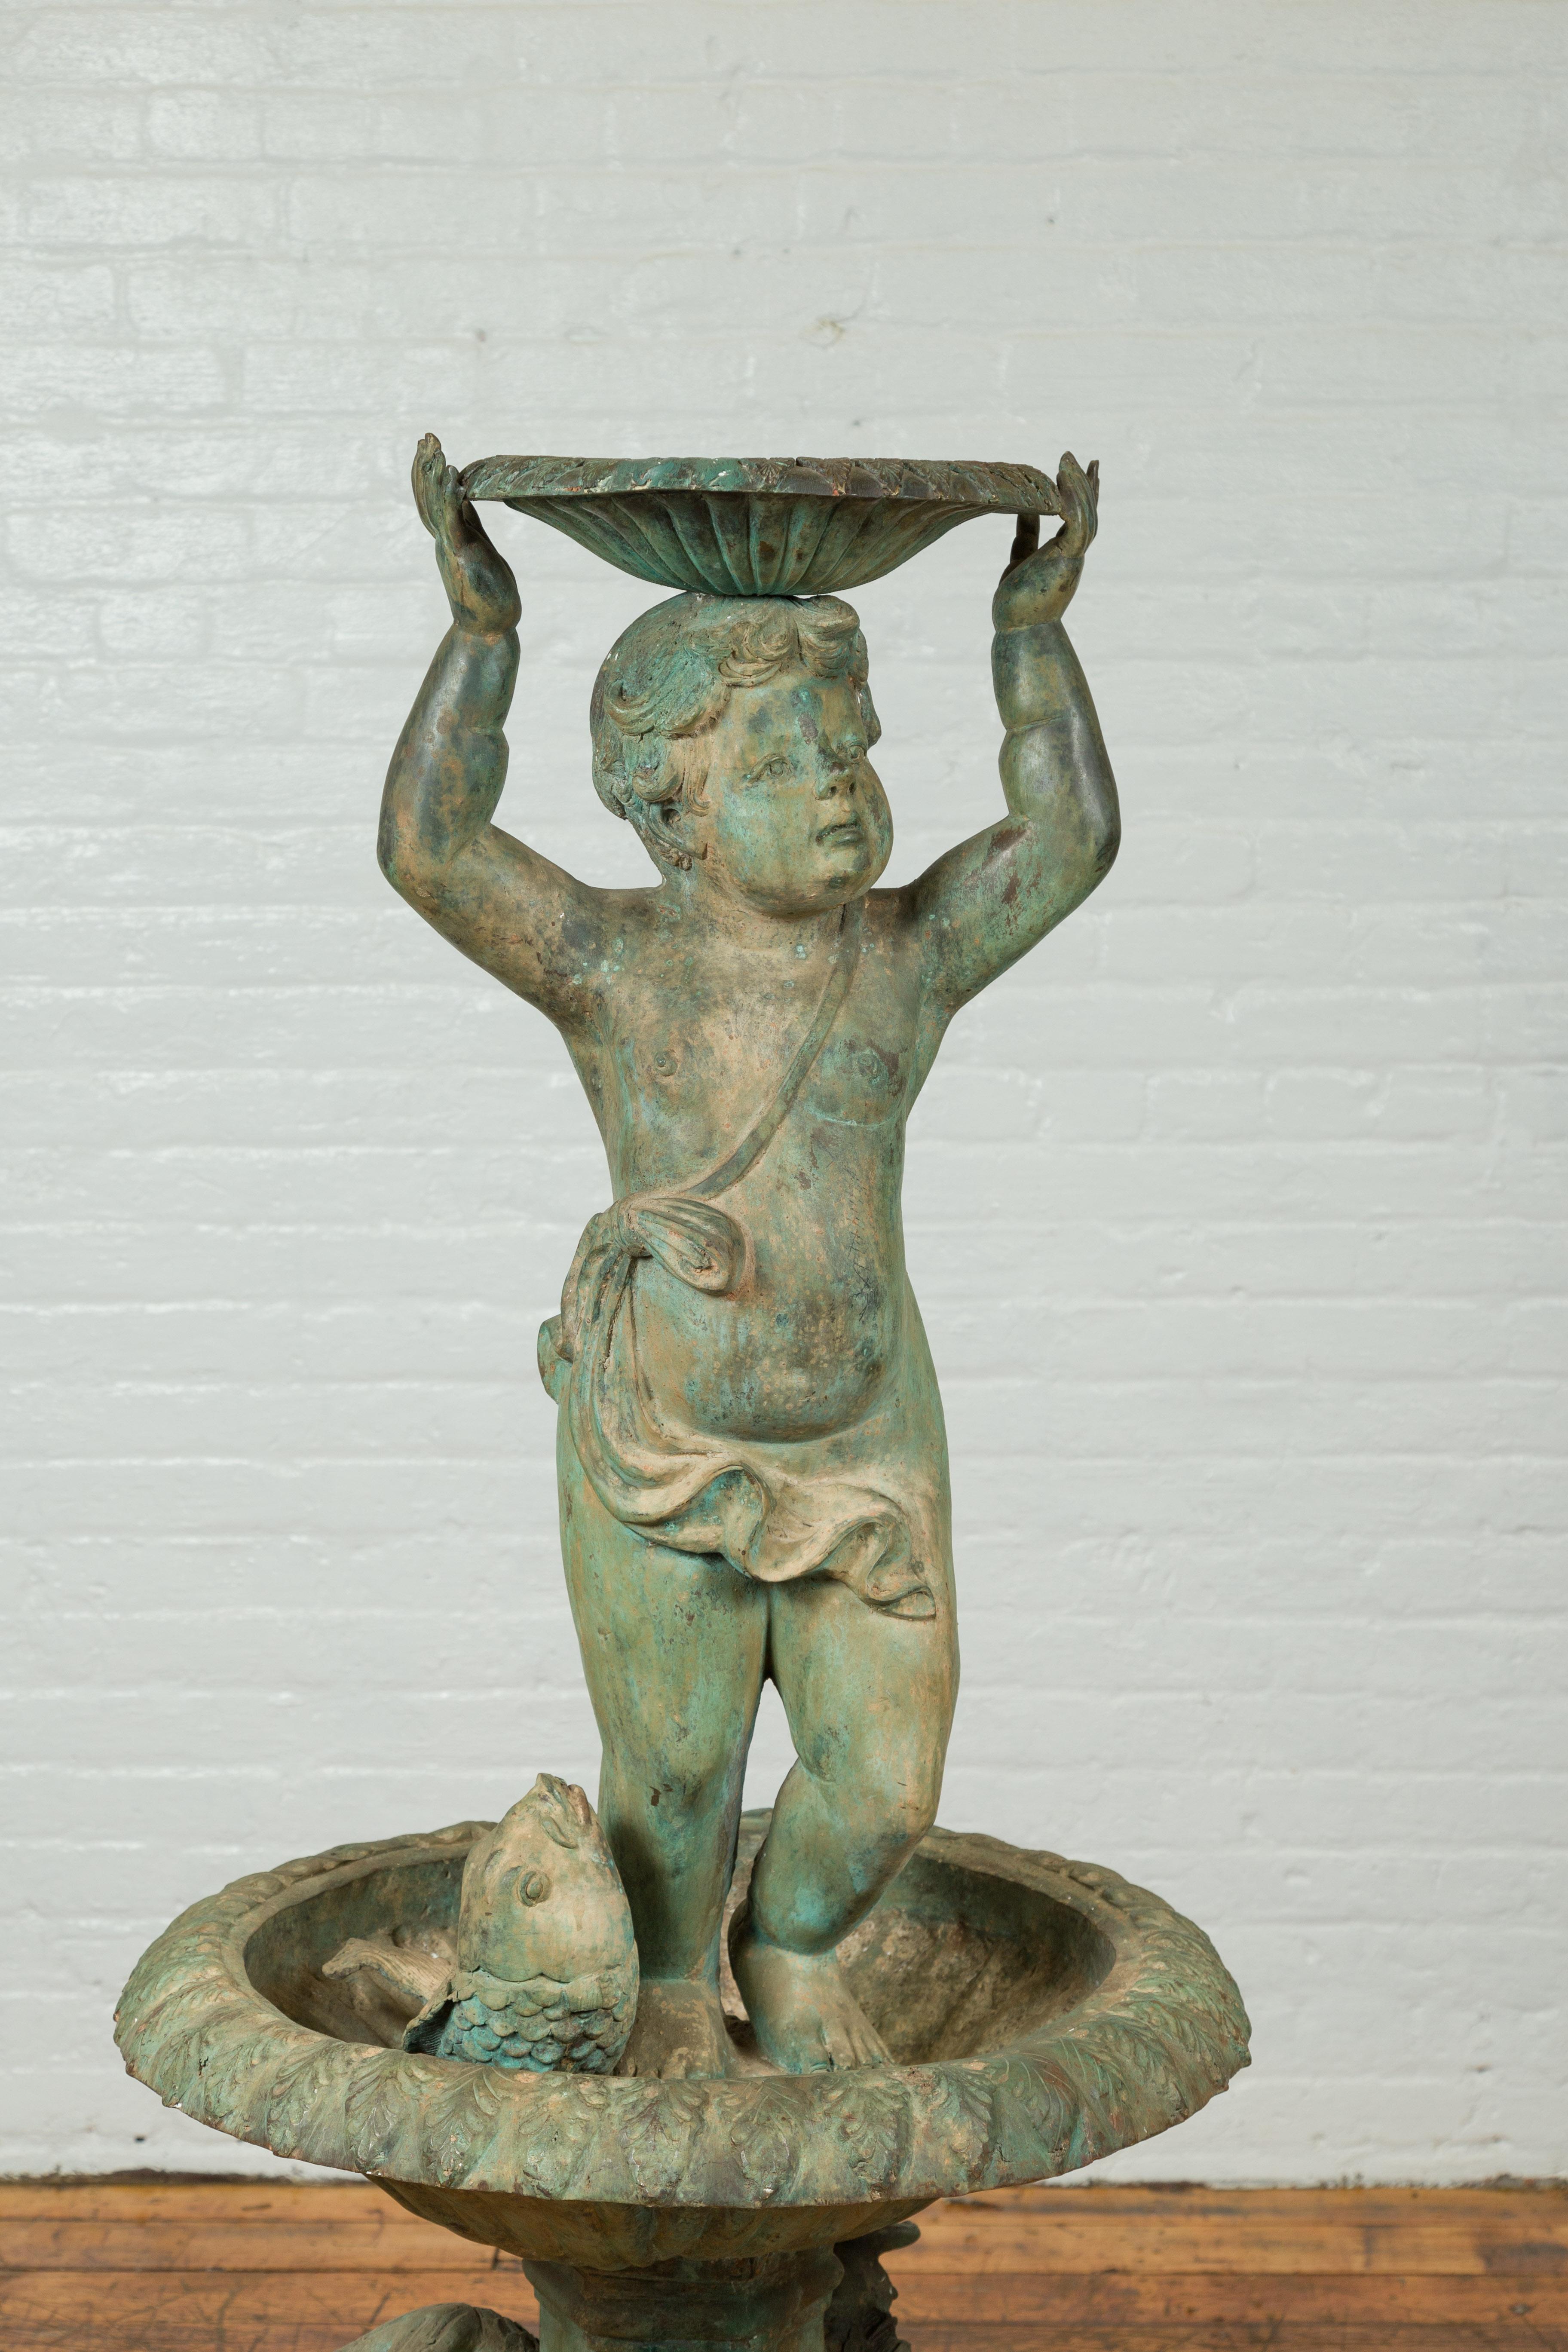 Une fontaine putto vintage de style gréco-romain avec patine verde, bassin et motifs de poissons. Créée avec la technique traditionnelle de la cire perdue qui permet une grande précision dans les détails, cette fontaine en bronze capte notre